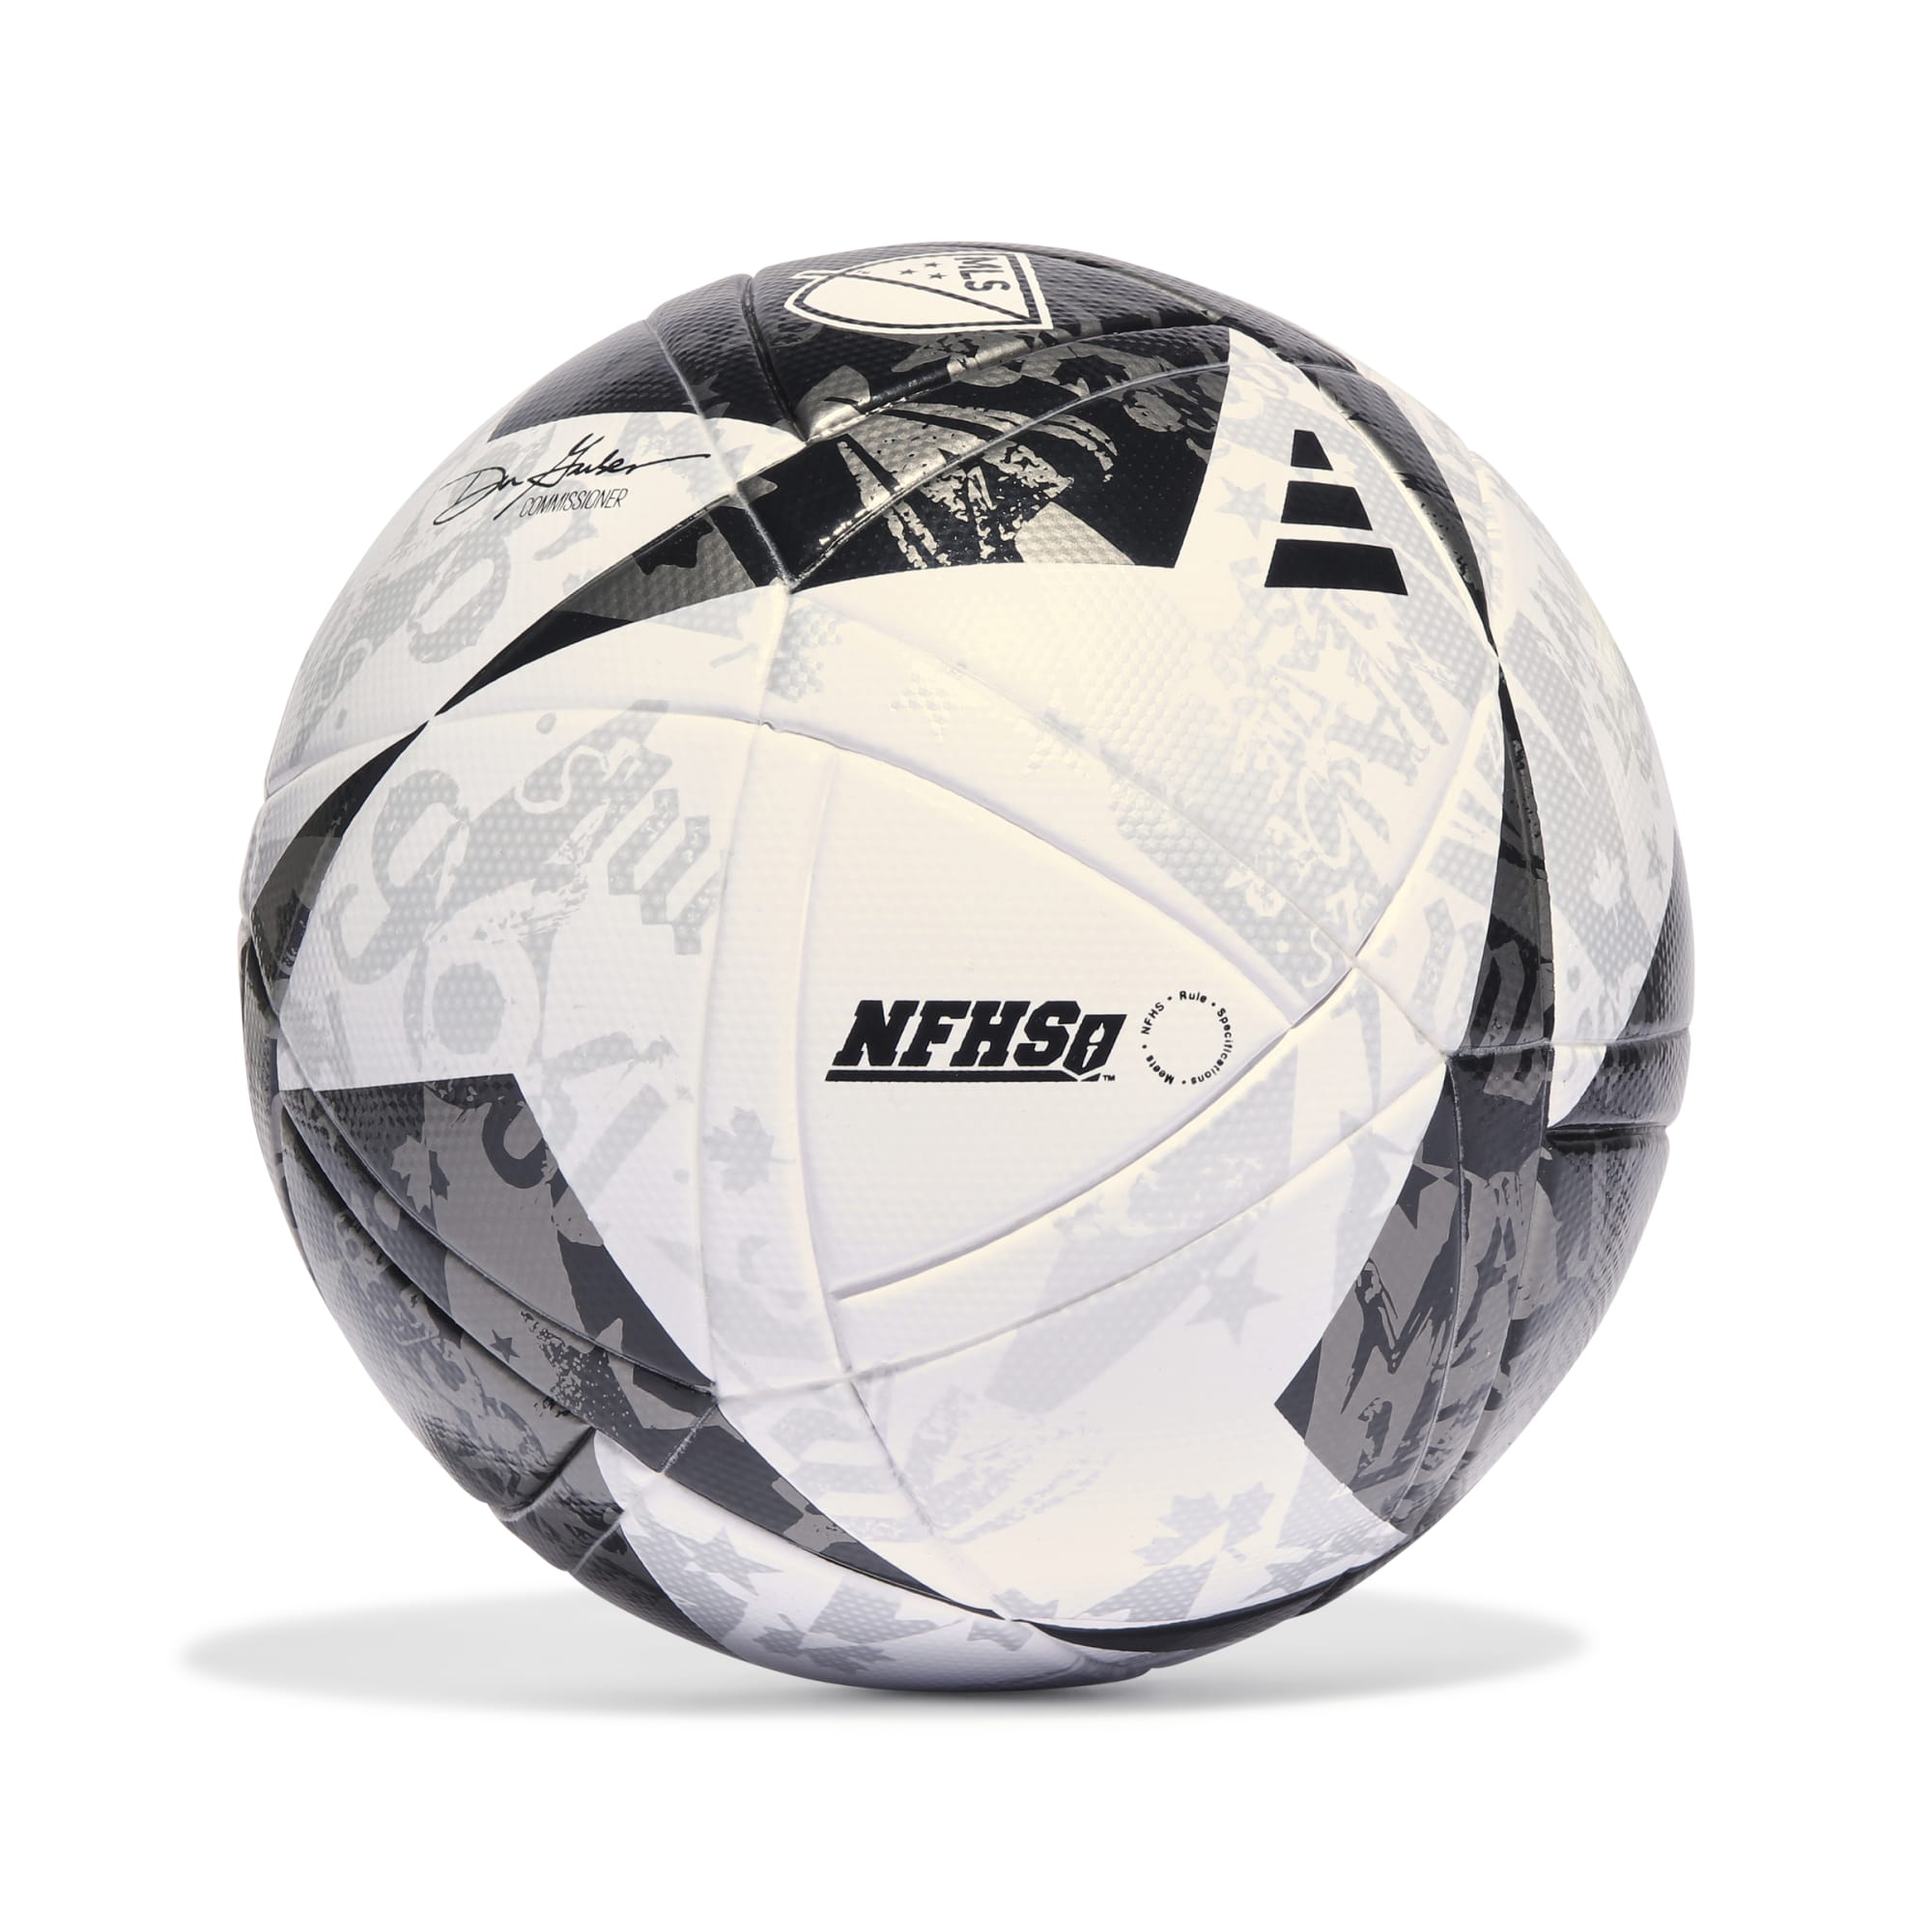 Adidas MLS League NFHS Ball - HT9024